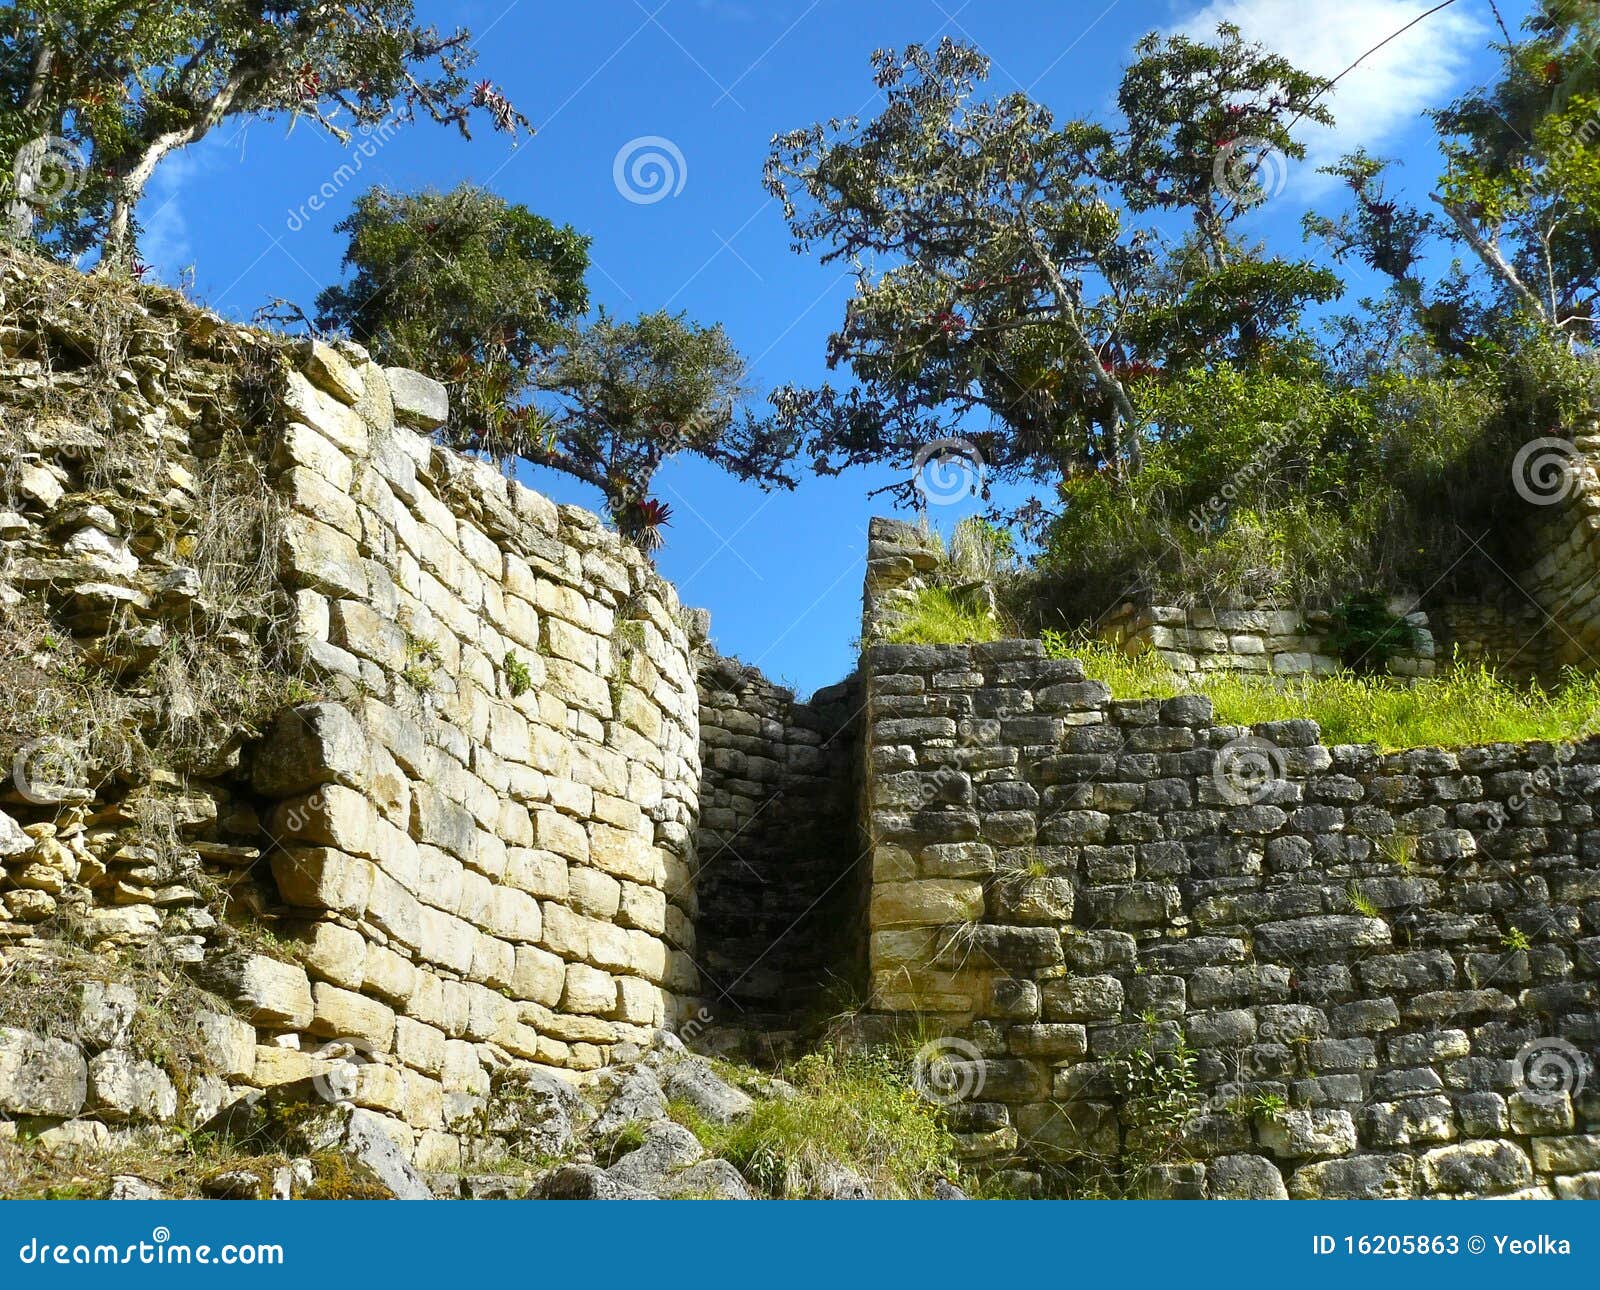 kuelap fortress,chachapoyas, amazonas, peru.